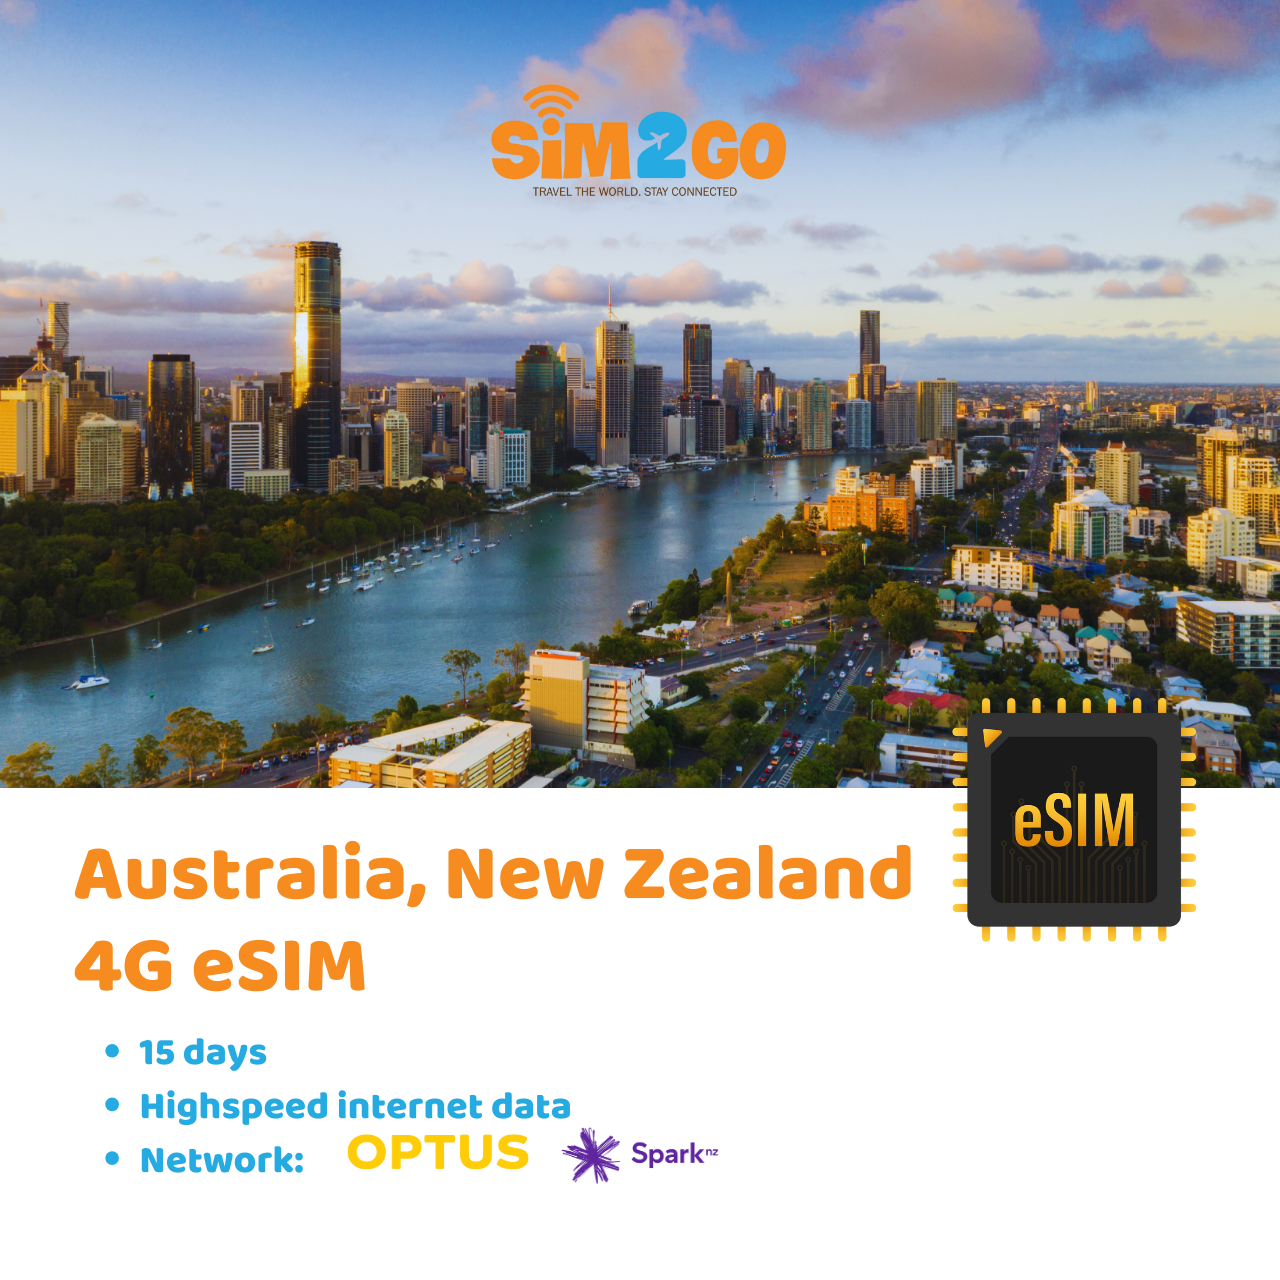 Australia & New Zealand eSIM for 15 days